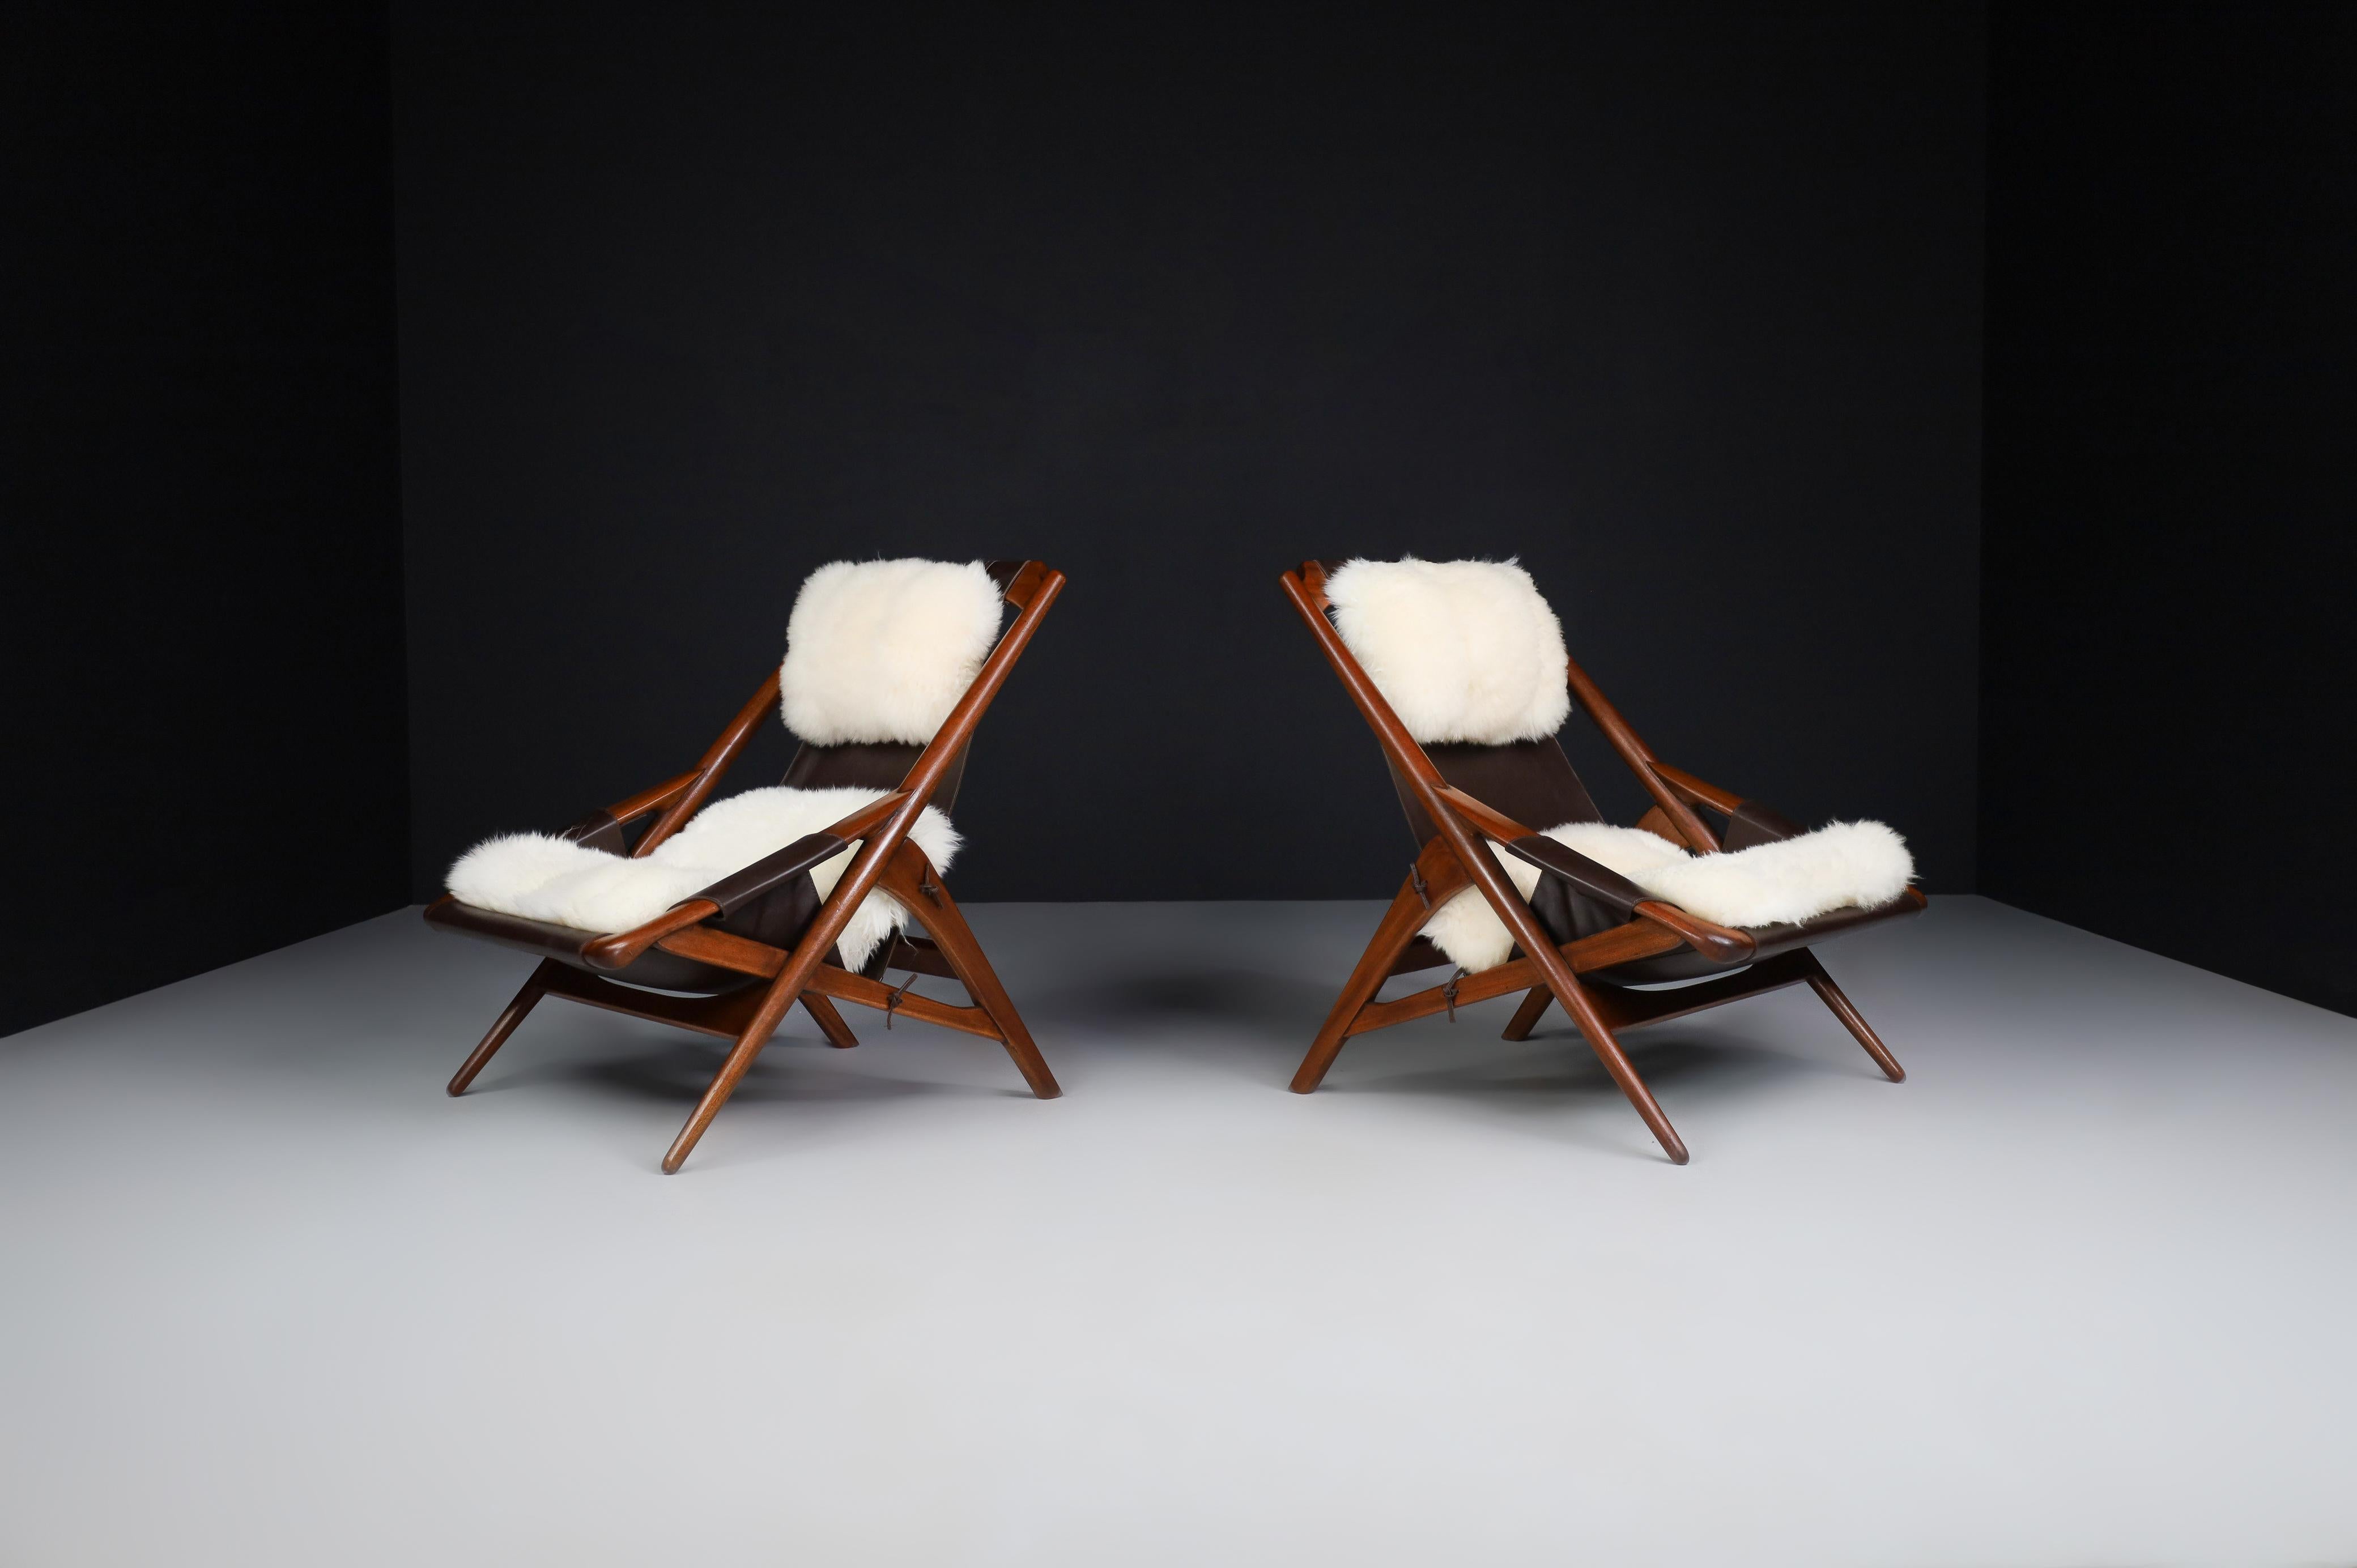 W.D. Andersag Lounge Stühle Teak und Leder, Italien 1959

Hervorragendes, vollständig restauriertes Paar sogenannter 